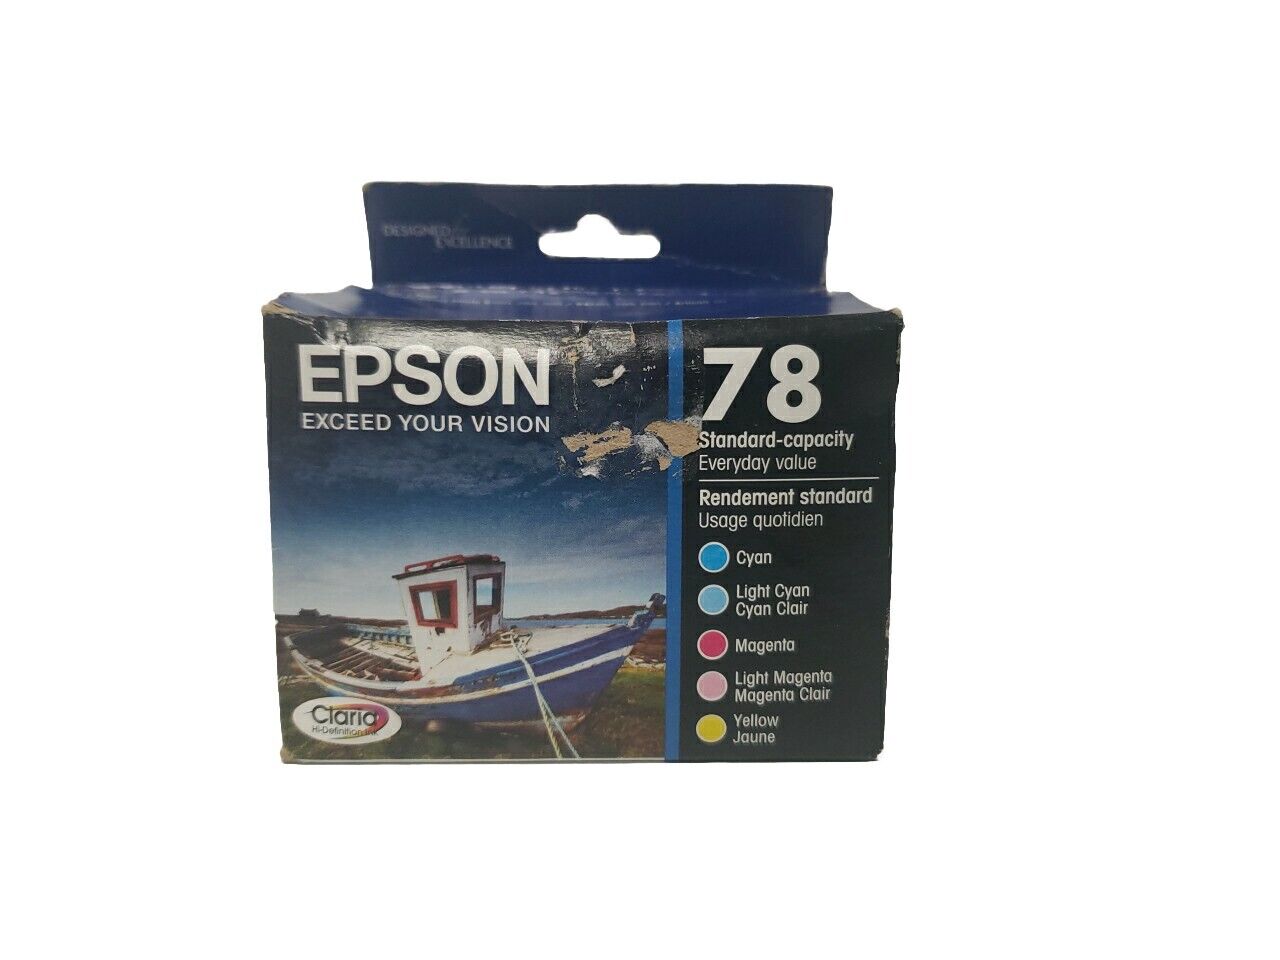 Epson T078920 78 Standard Capacity Ink Cartridges EXP 07/2020 5 Pack Geniune OEM